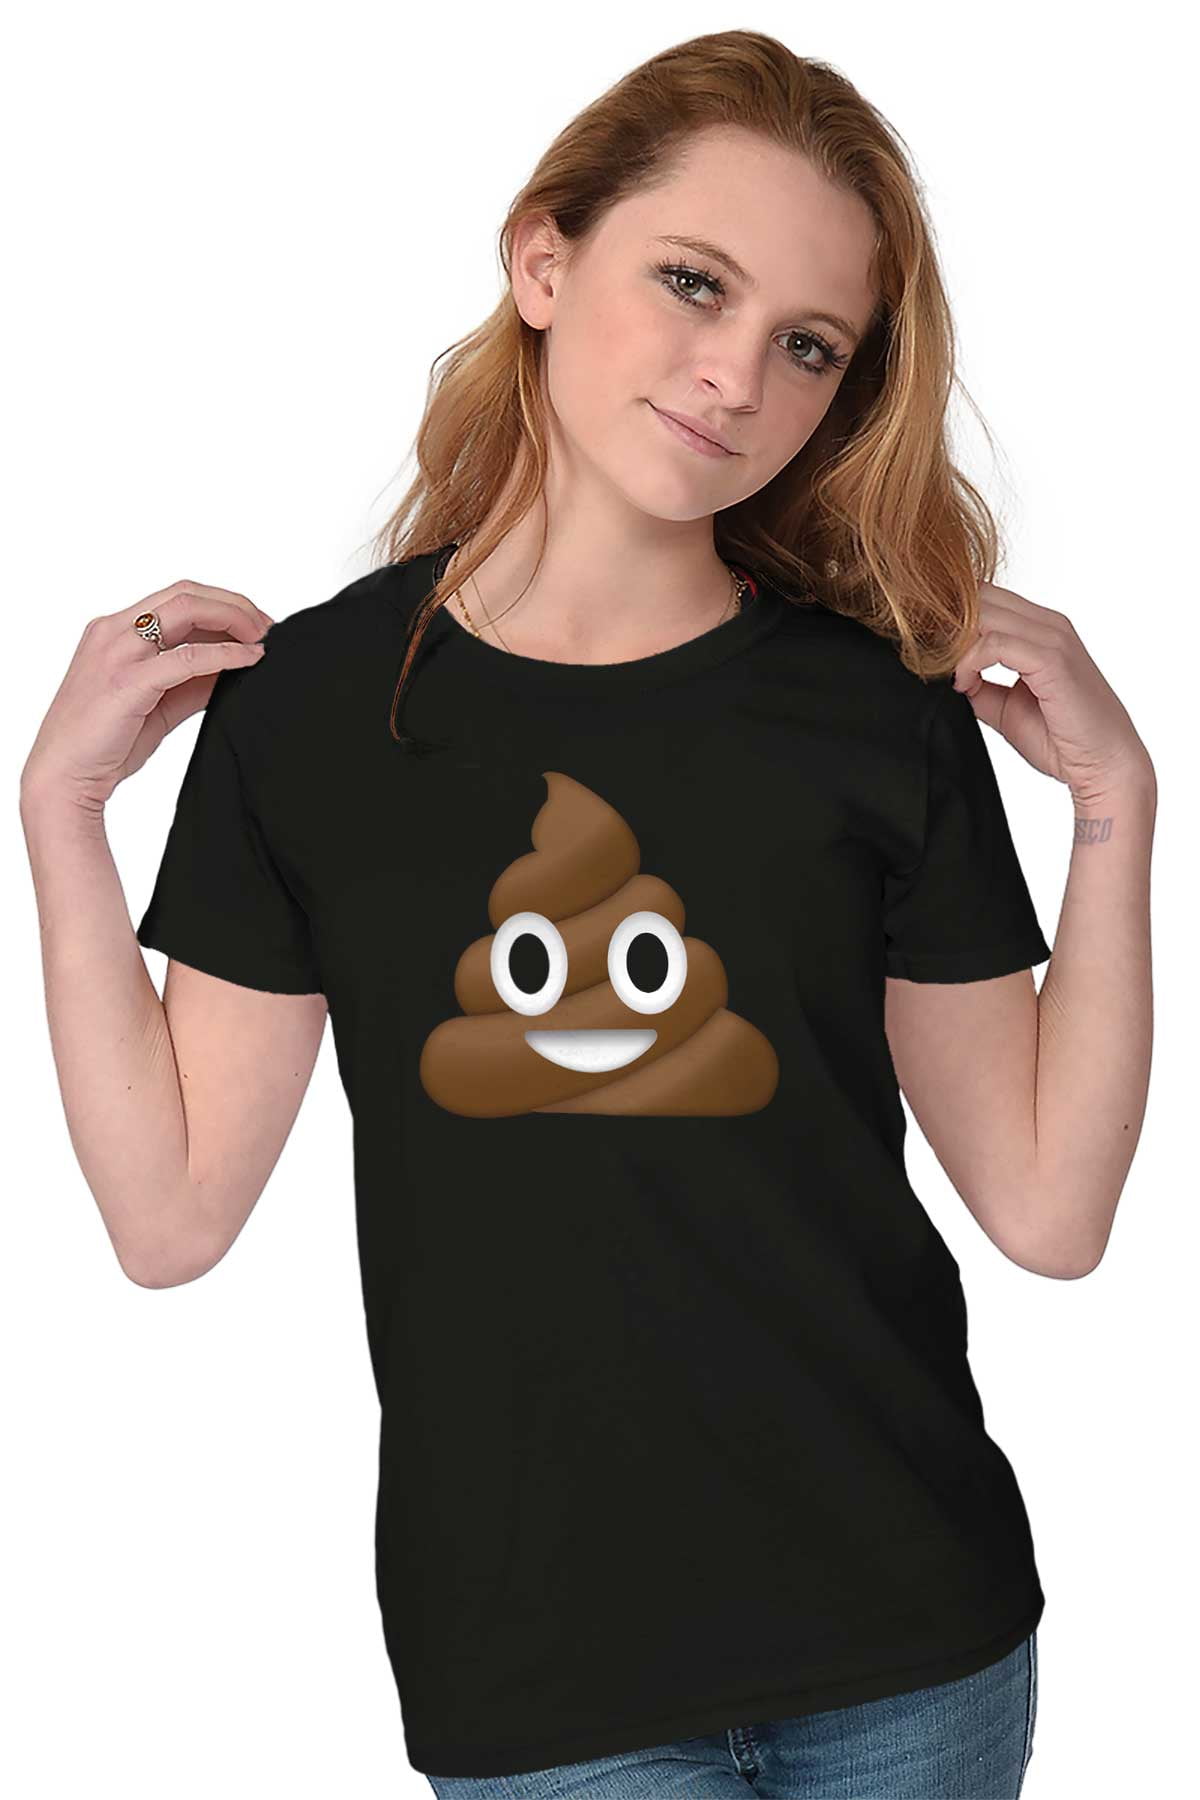 Emoji Tees Shirts Tshirts For Womens picture